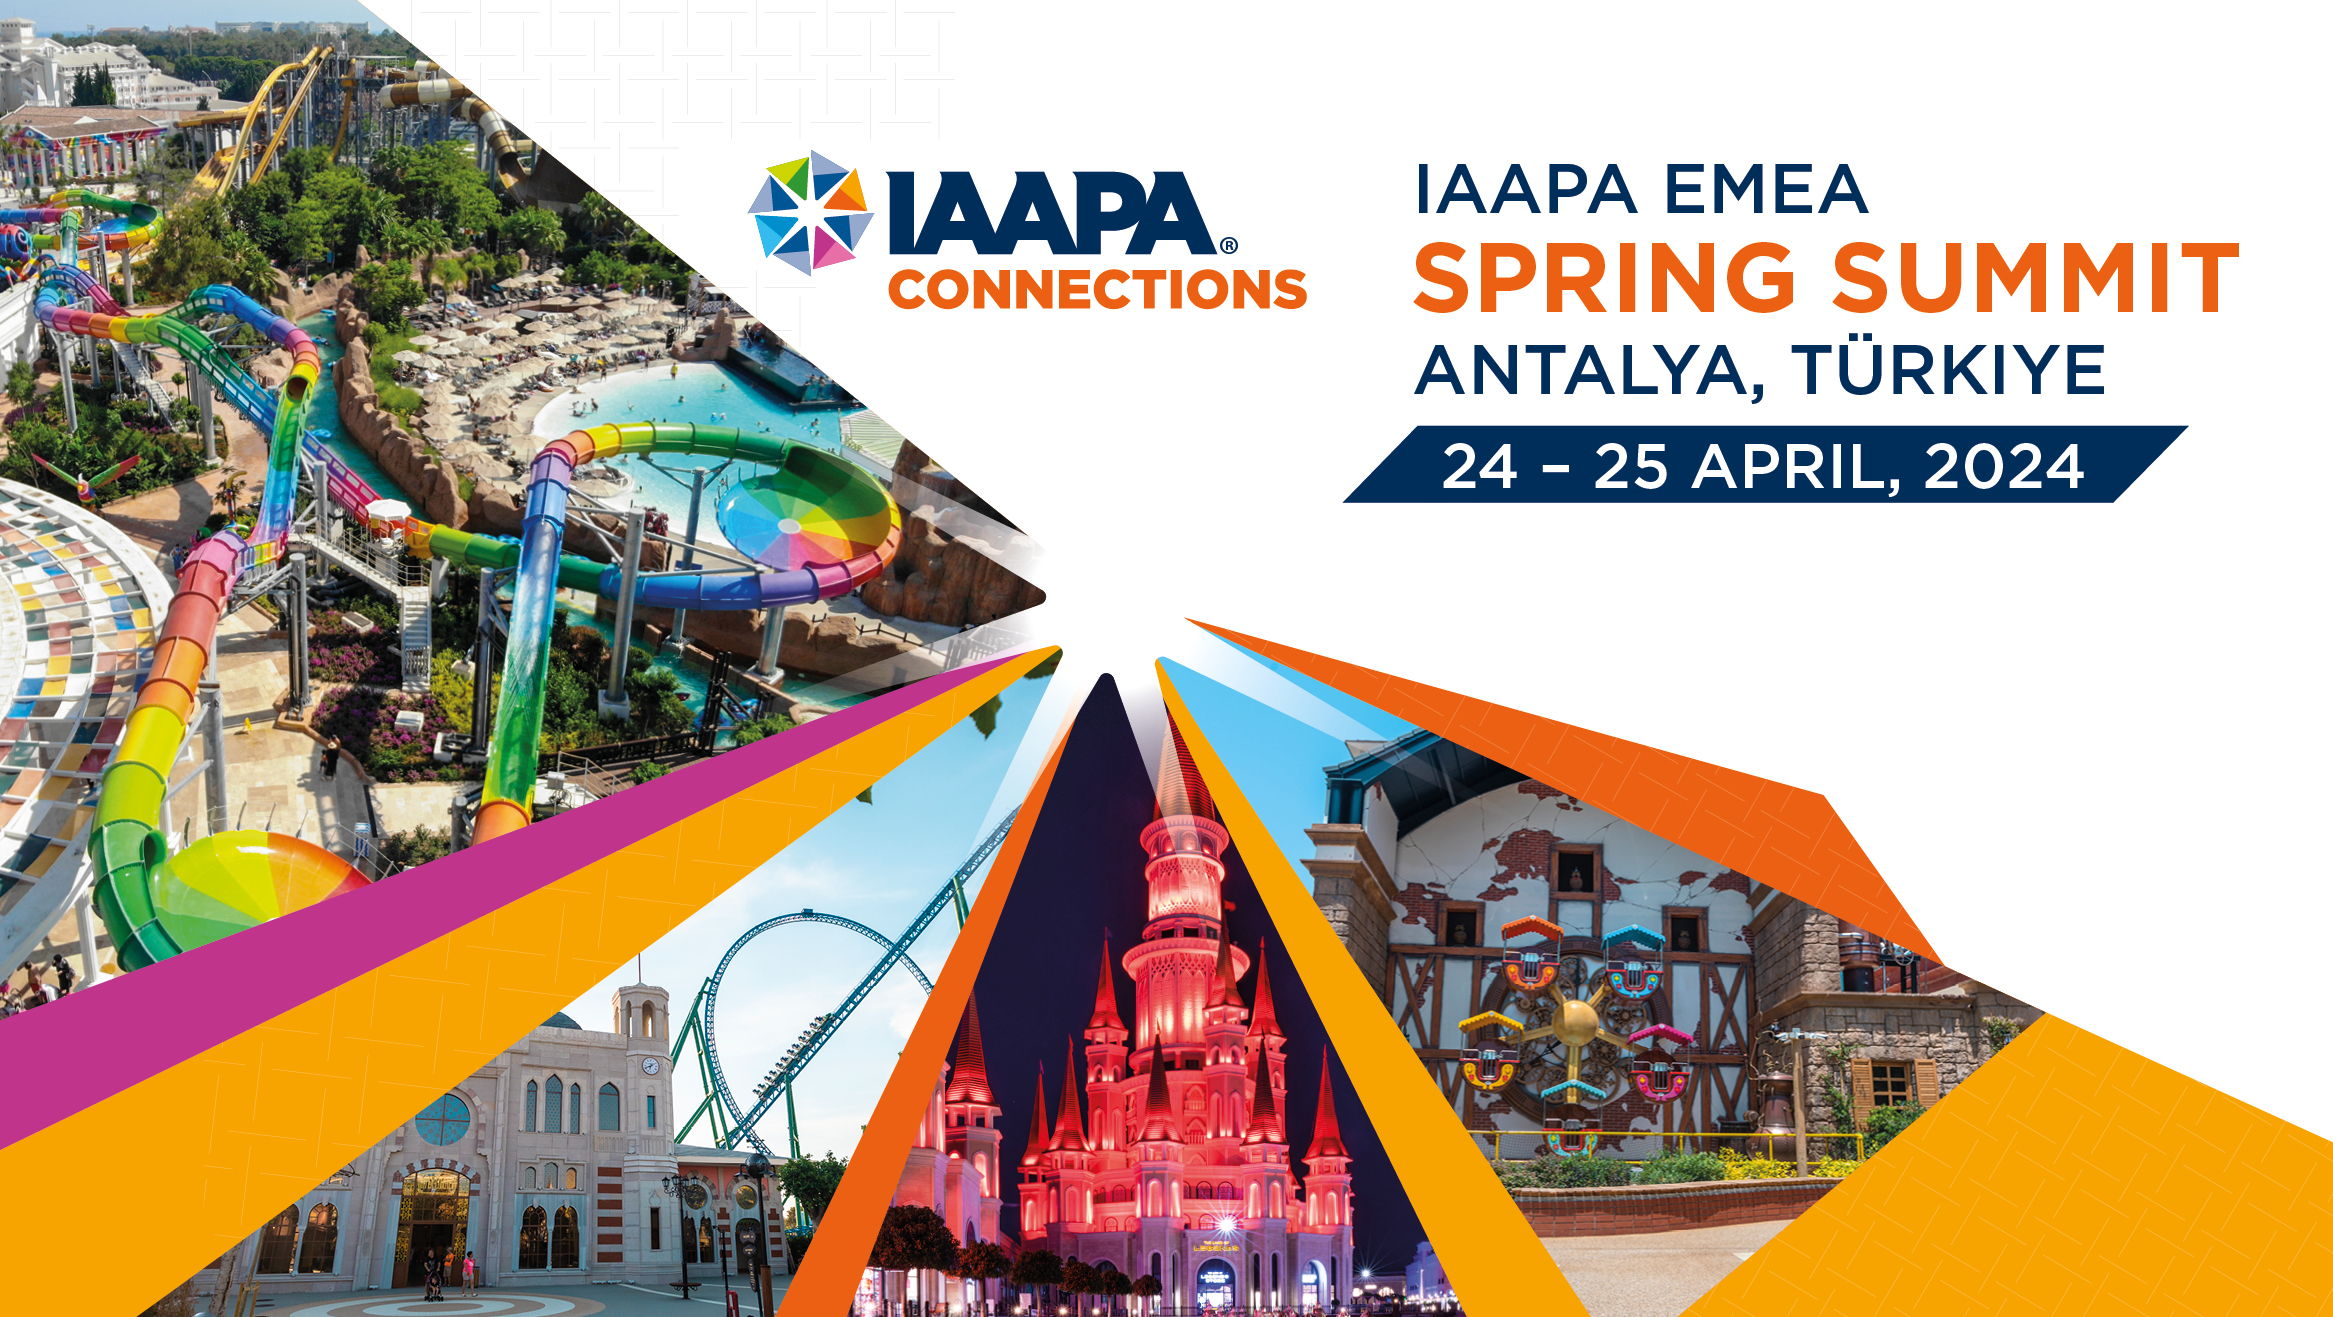 IAAPA EMEA Spring Summit 2024 IAAPA